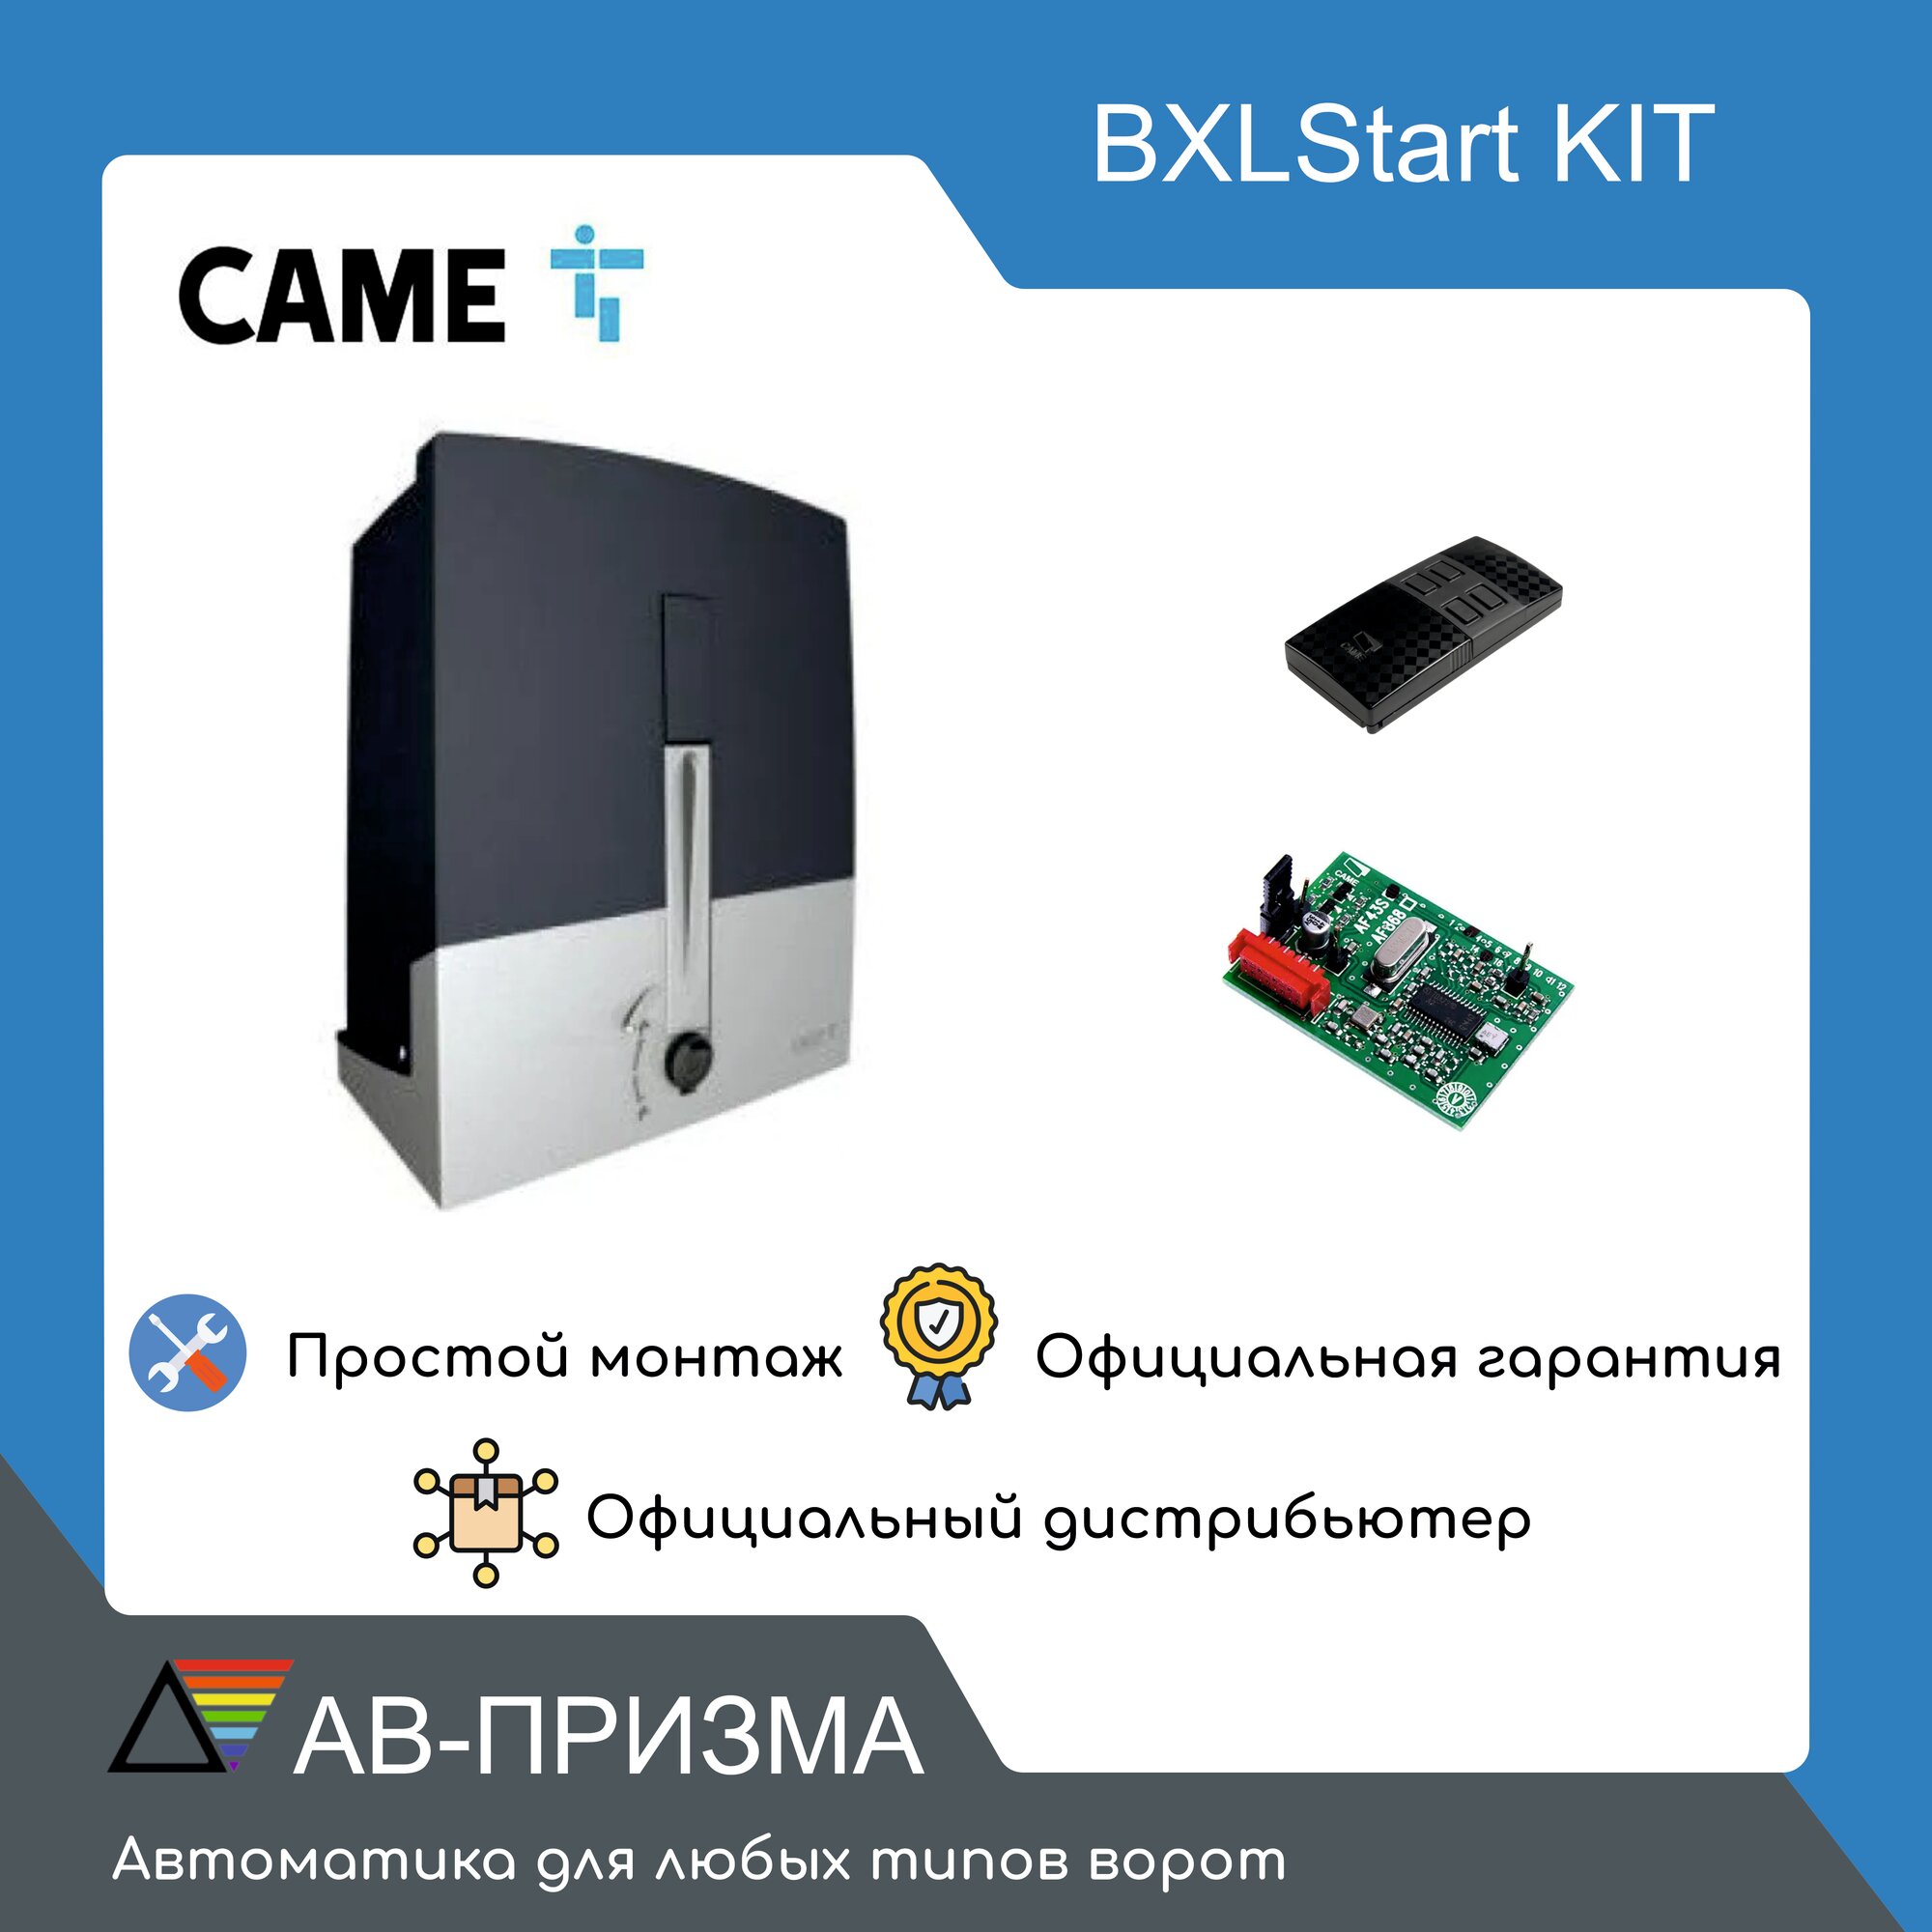 BXLStart KIT Комплект привода для откатных ворот CAME до 400 кг. Привод, радиоприёмник, пульт.